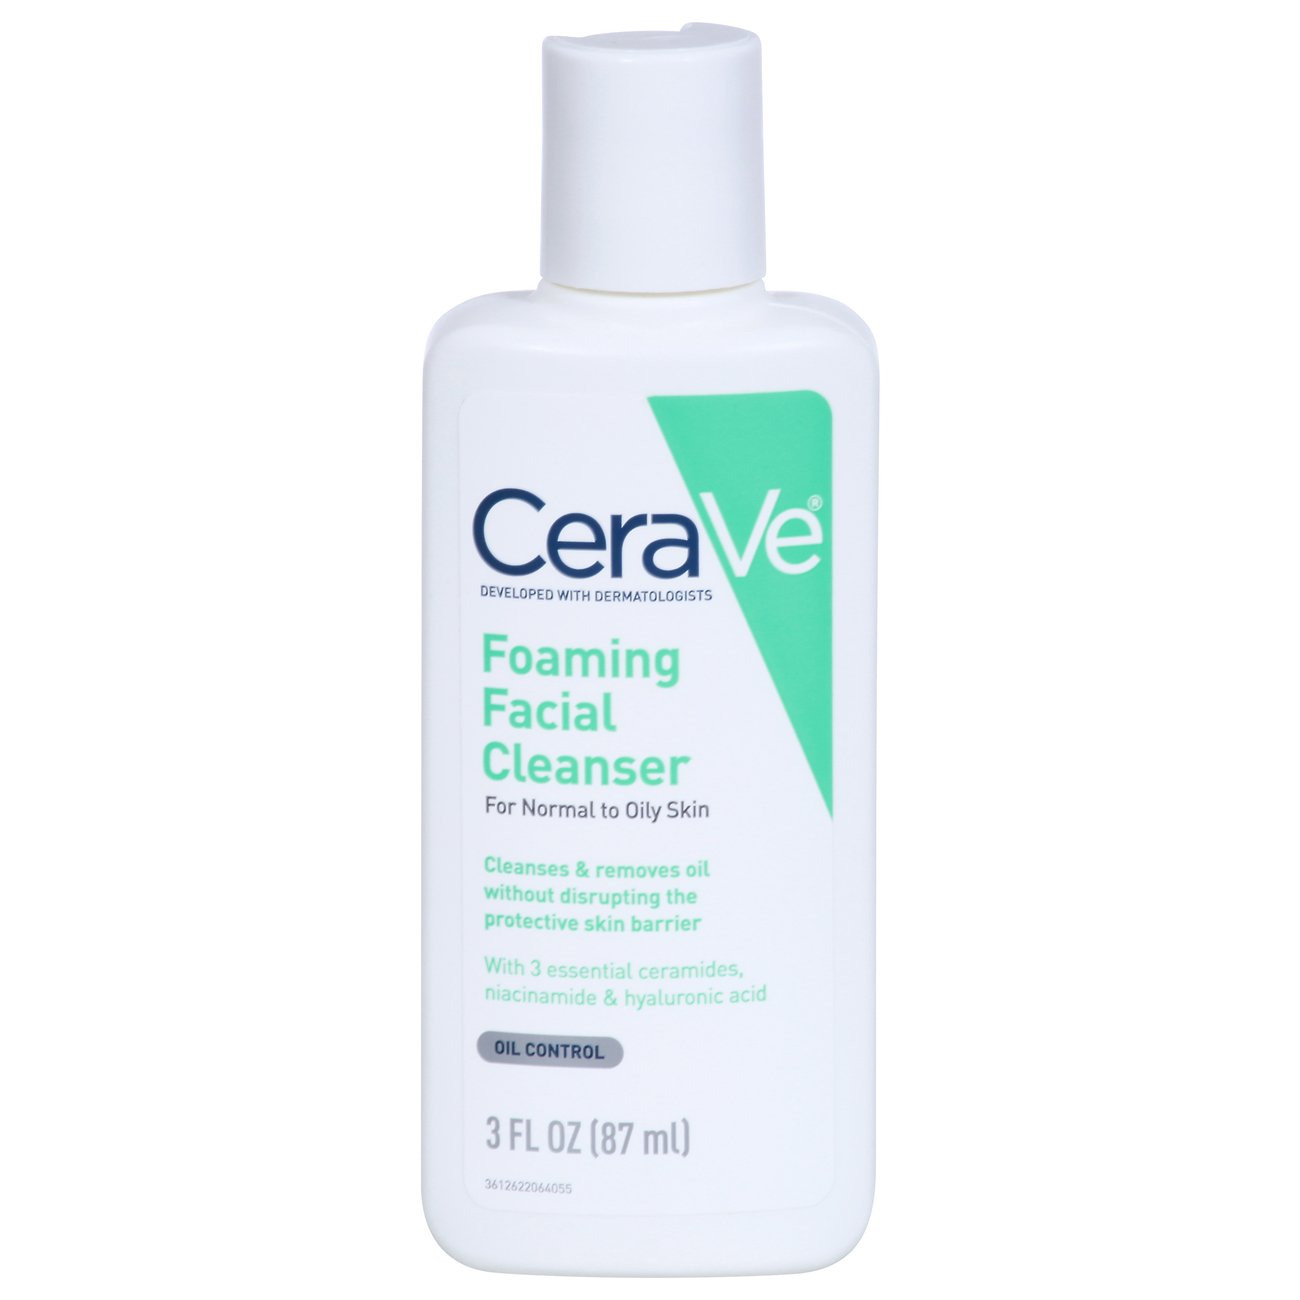 CeraVe Foaming Facial Cleanser – Limpiador Facial Espumoso – piu Bella by RG